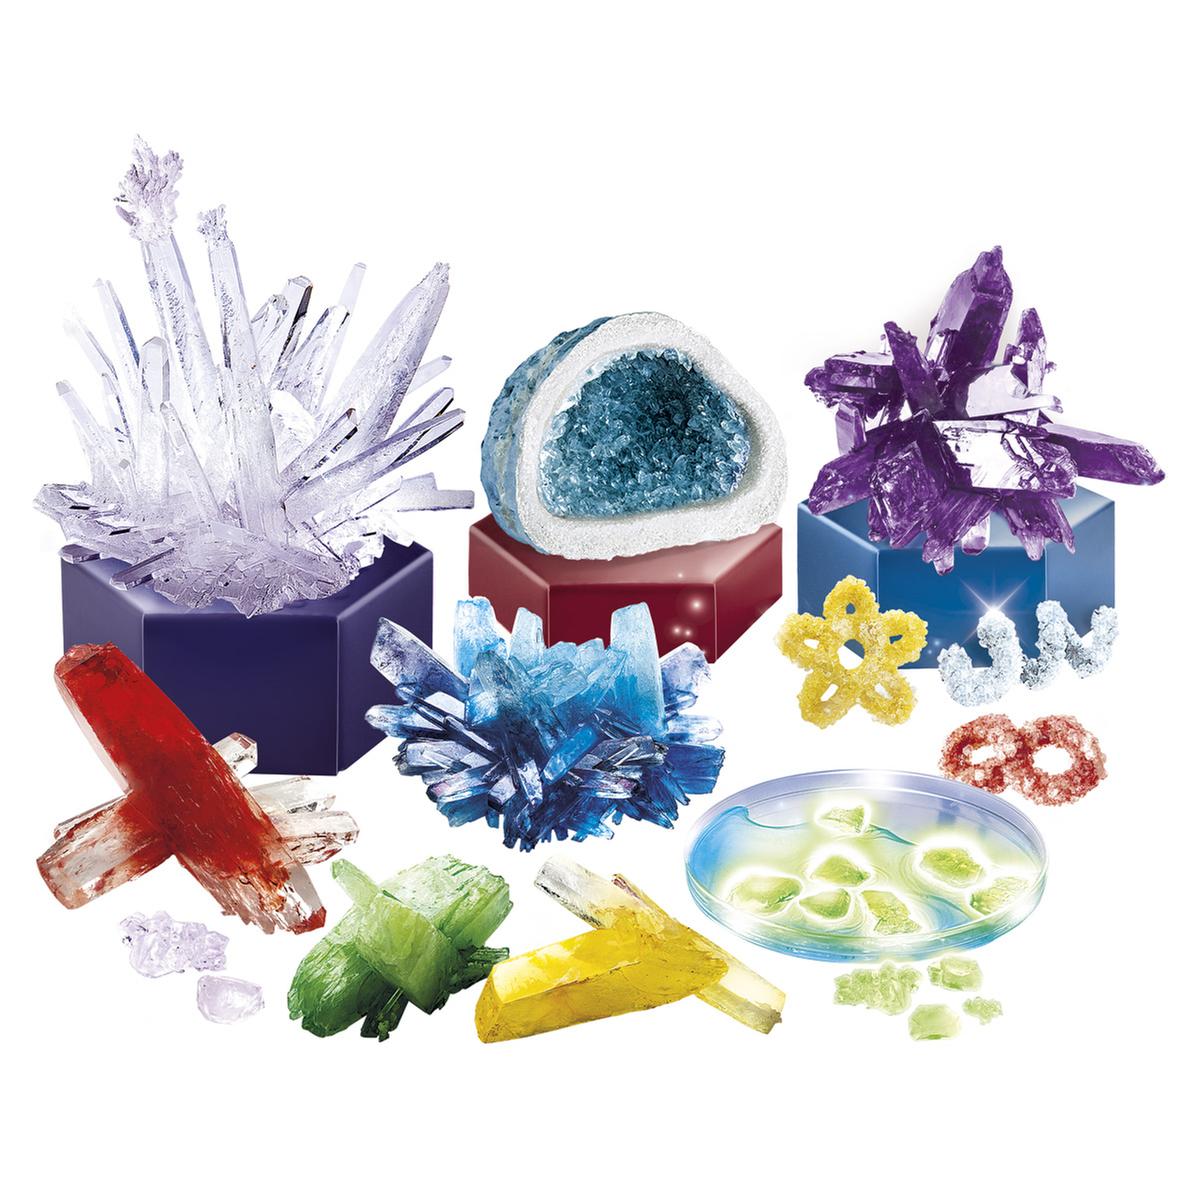 Laboratorio de Cristales Gigantes | Clementoni Ciencia | Toys"R"Us España